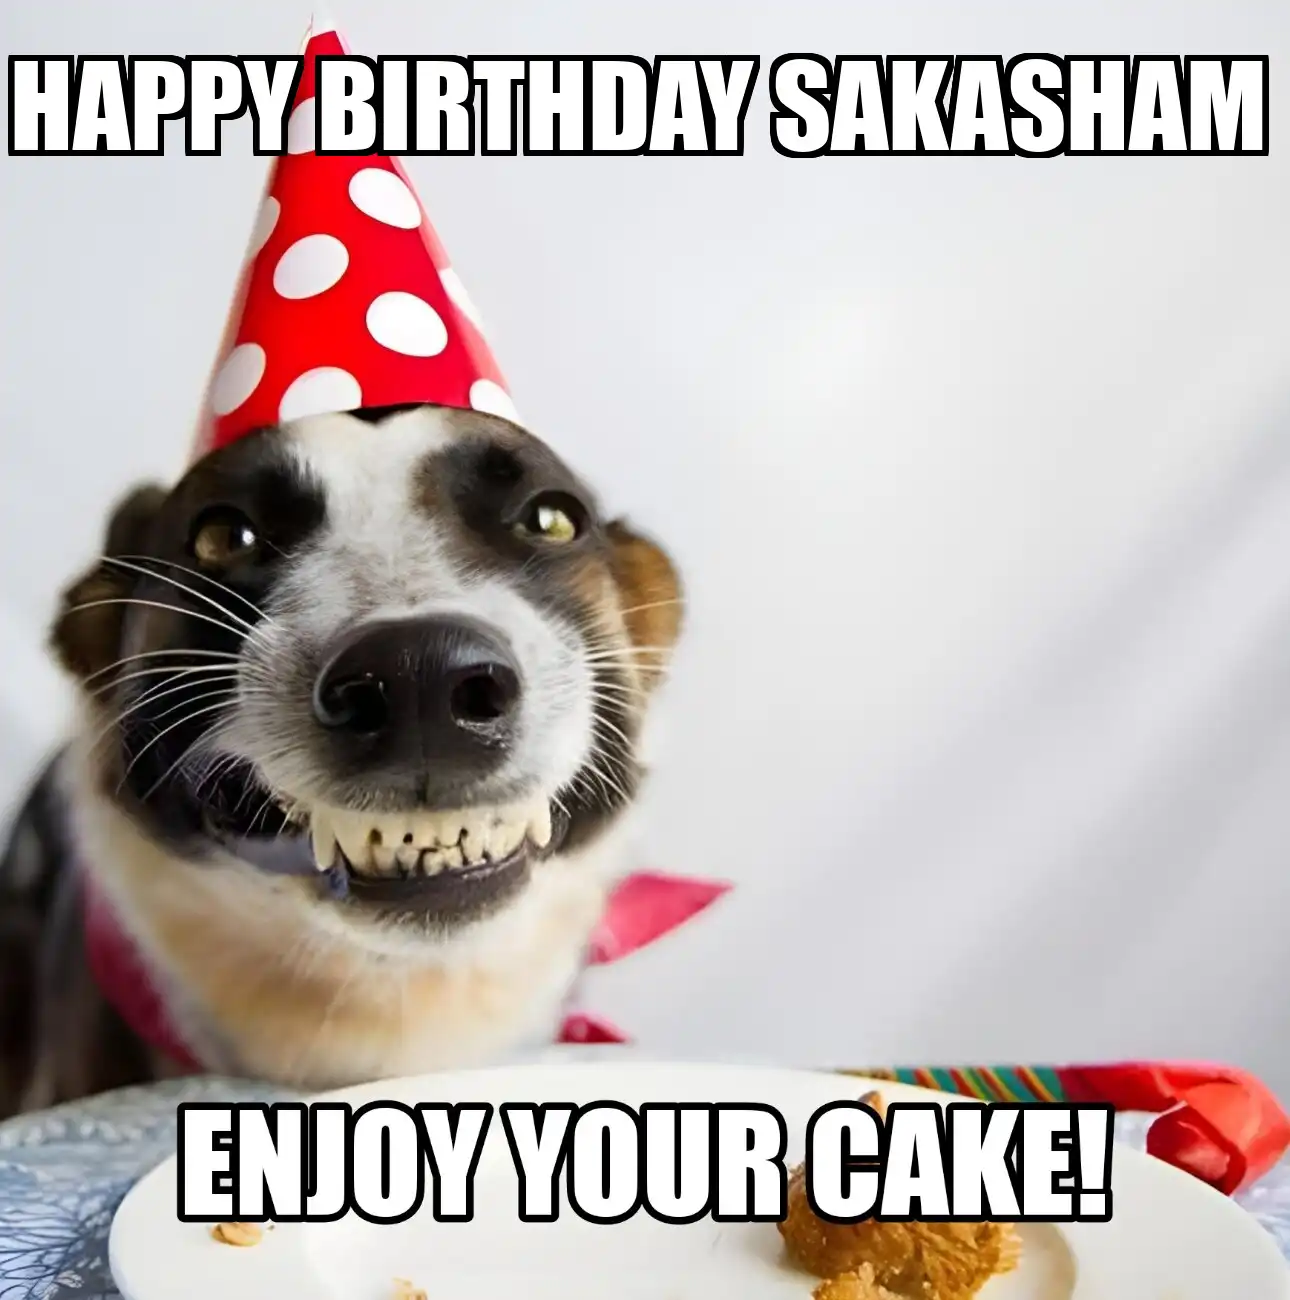 Happy Birthday Sakasham Enjoy Your Cake Dog Meme